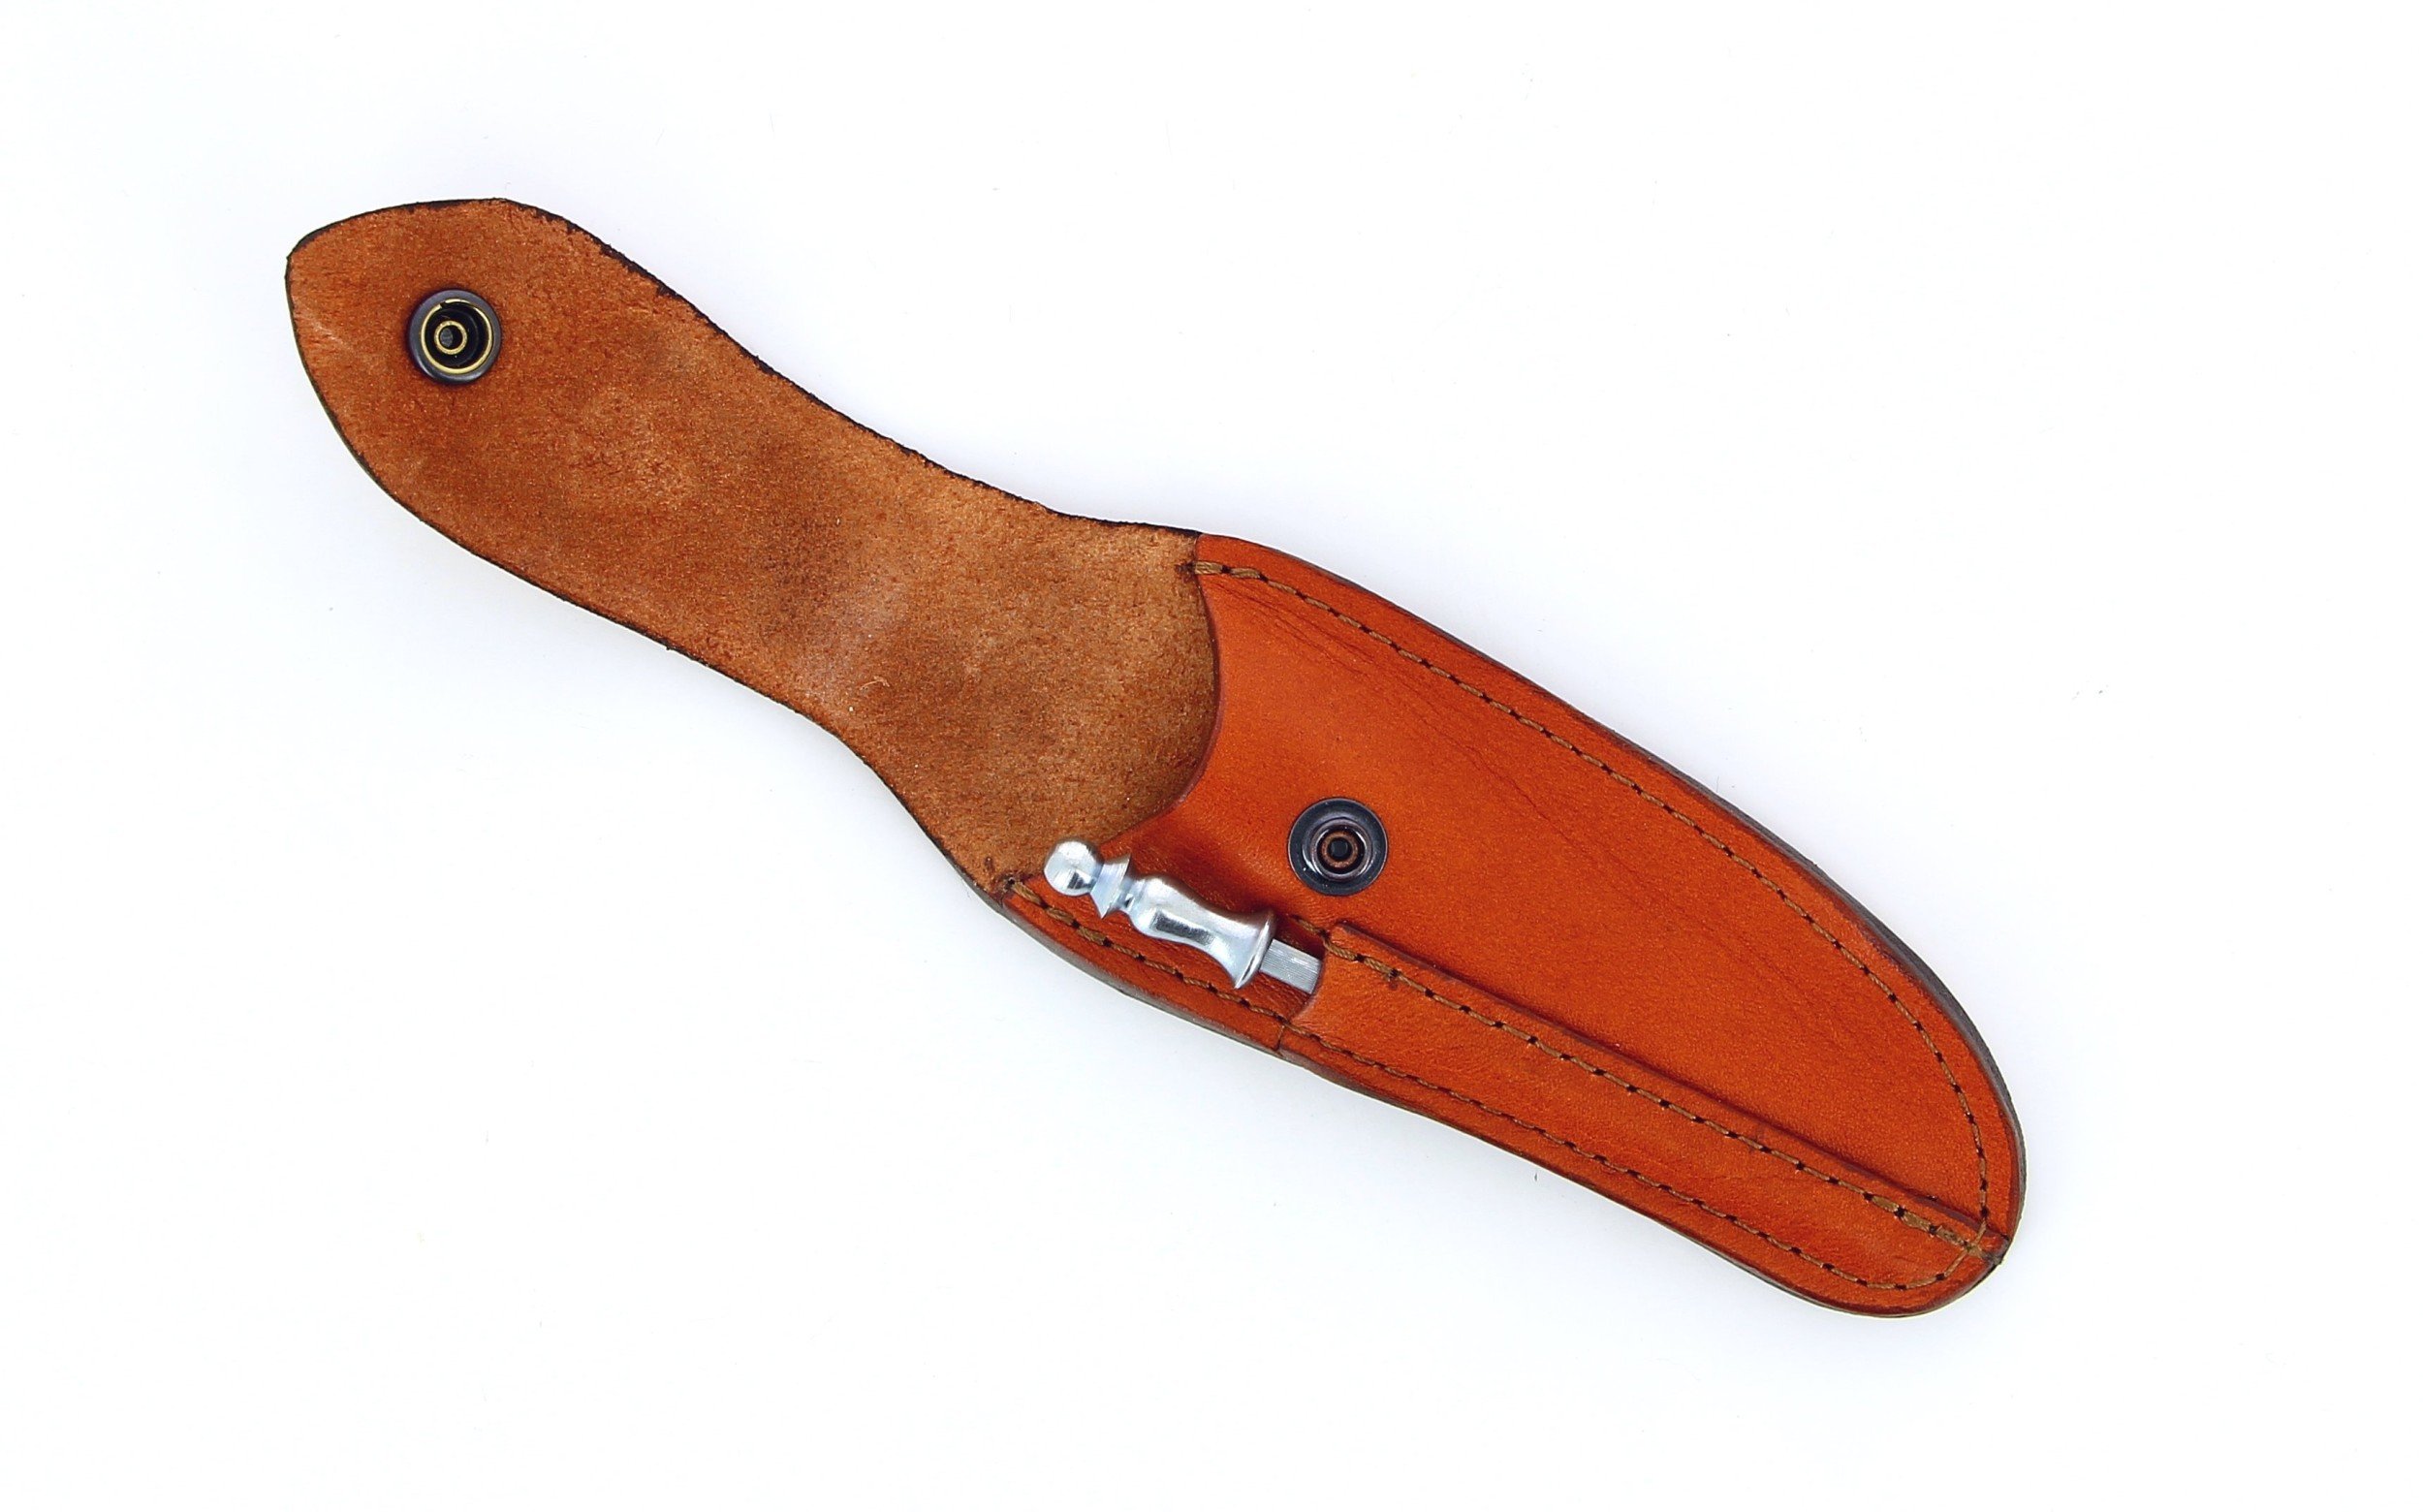 Etui en cuir marron clair avec fusil tête inox, pour couteau Laguiole avec manche de 11 cm et 12 cm